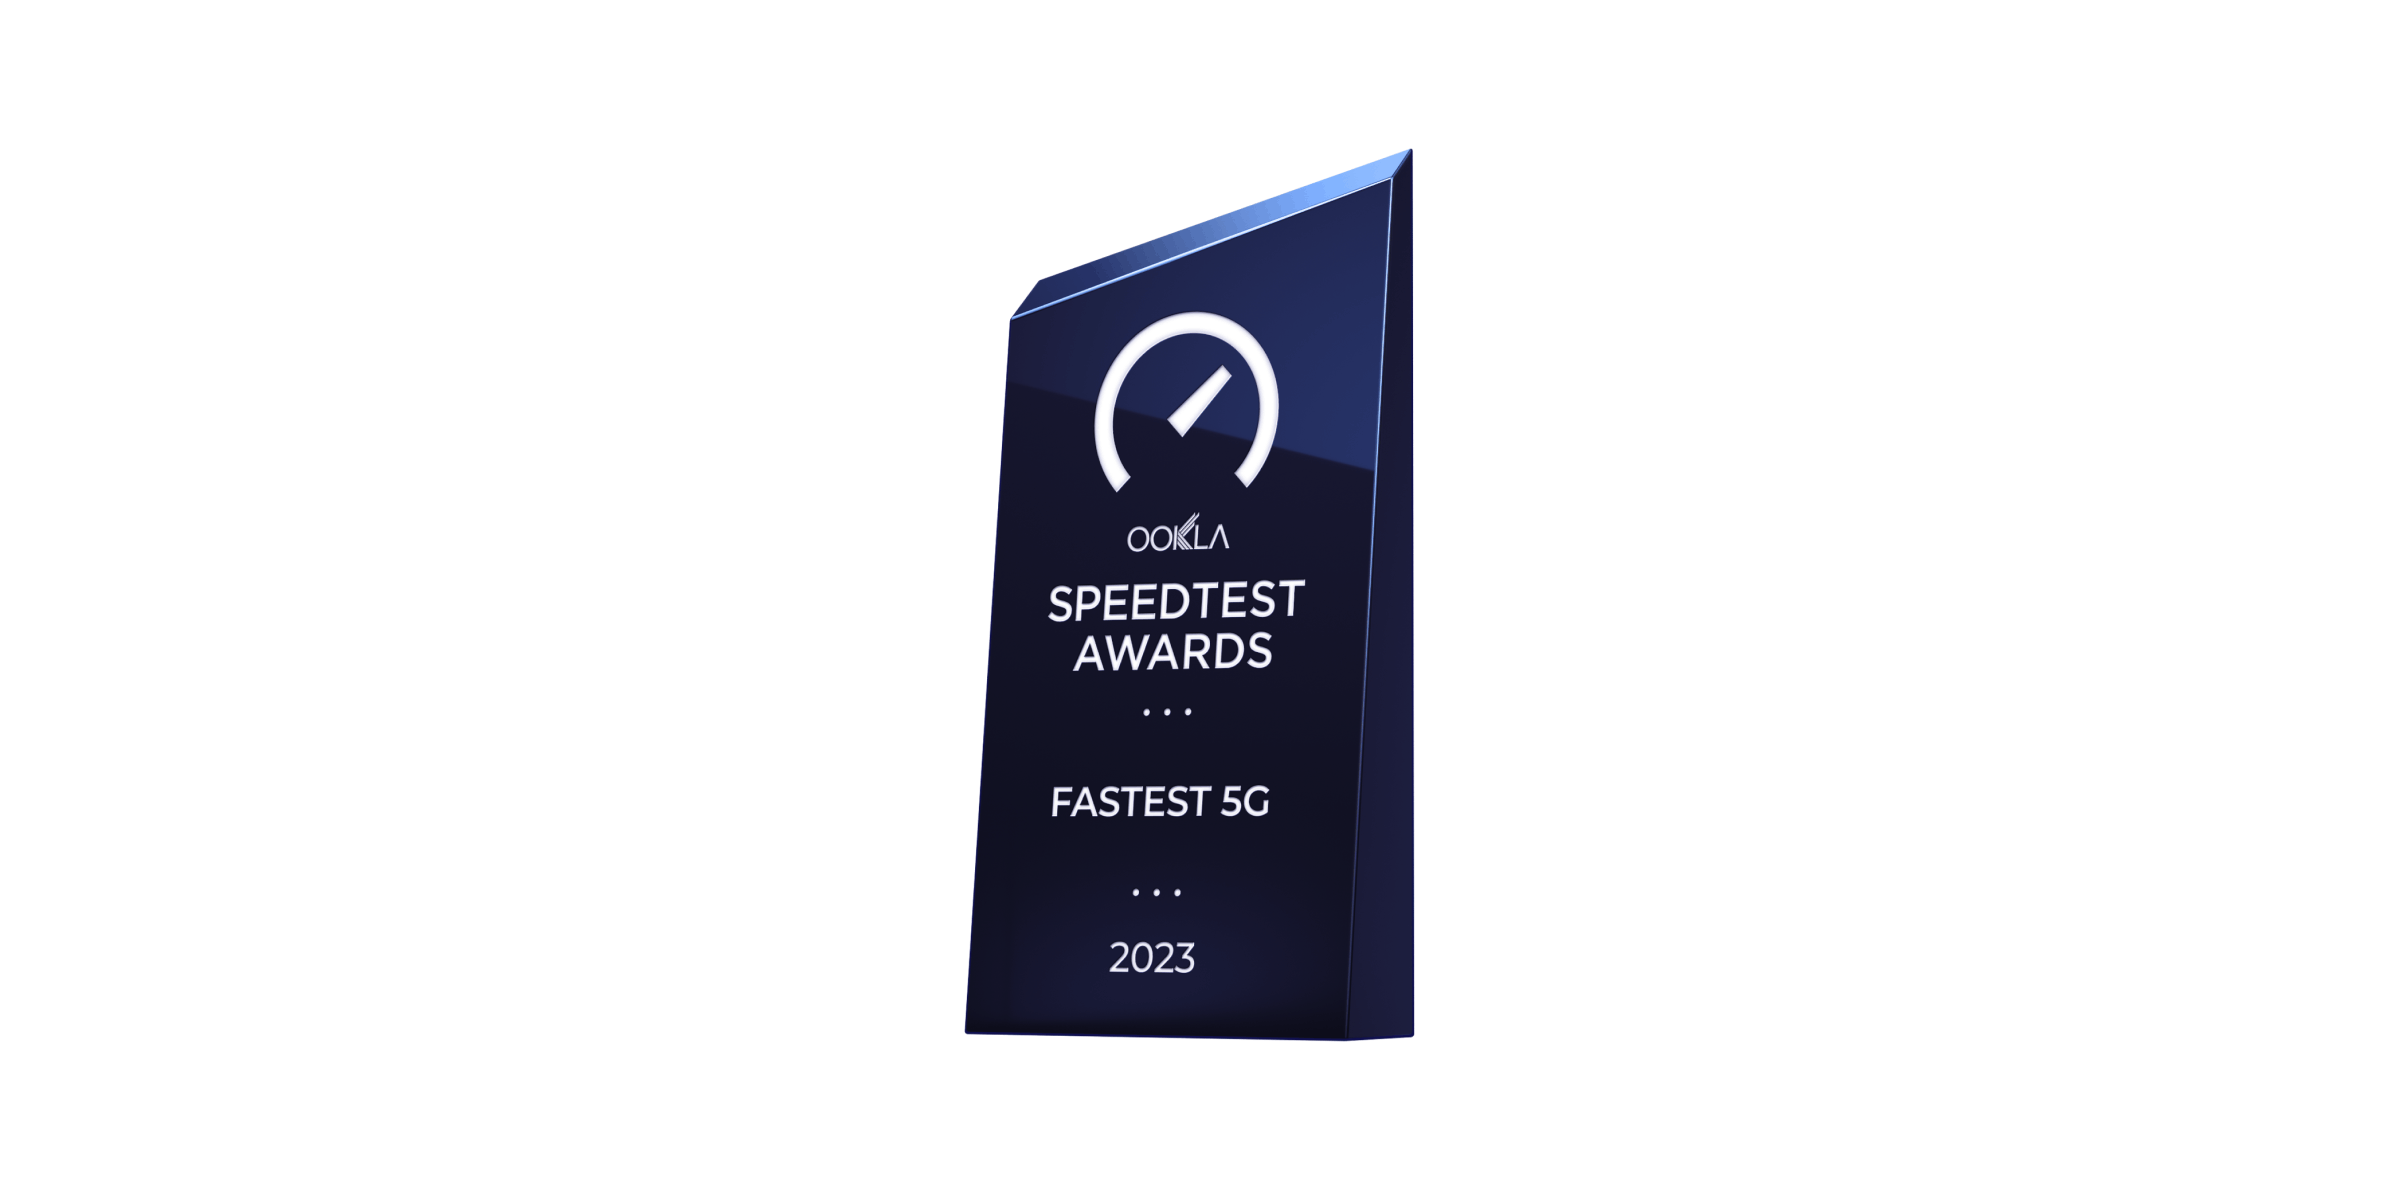 Speedtest awards: fastest 5G 2023